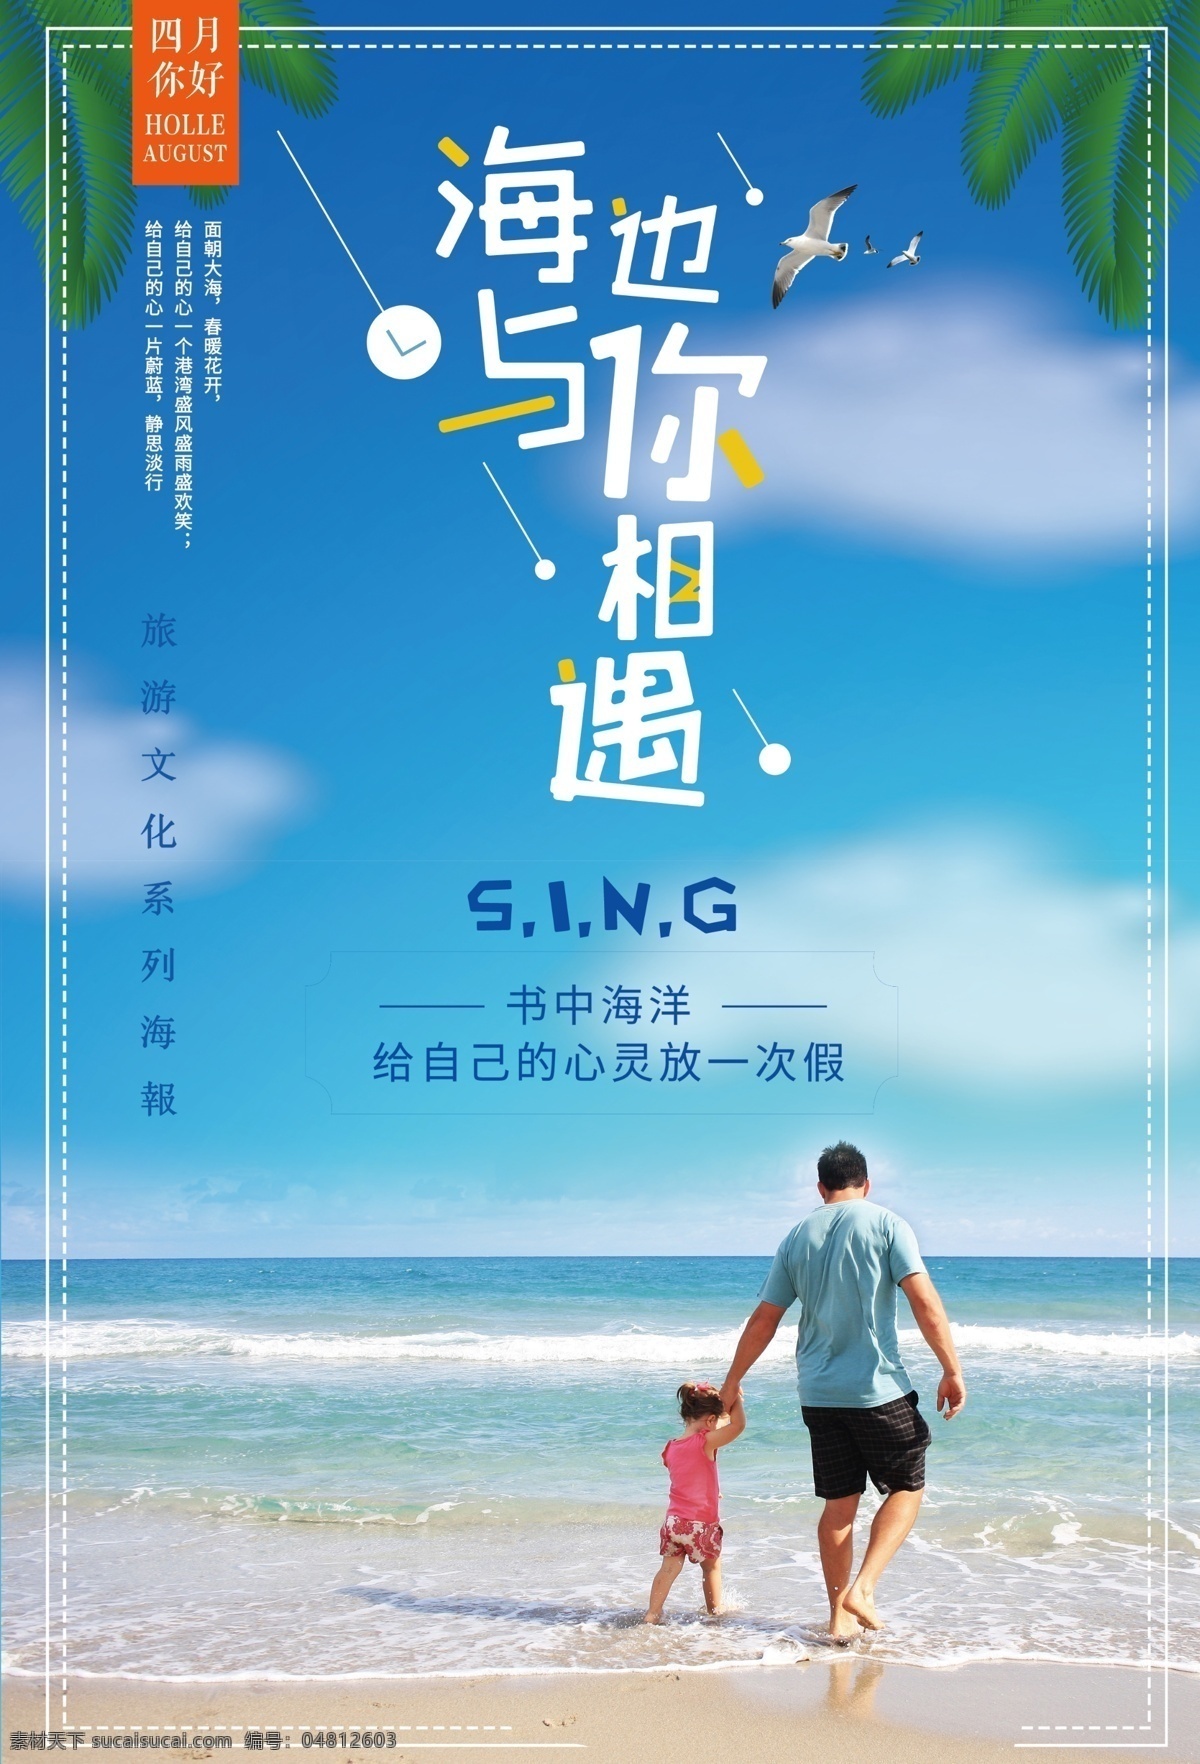 旅游广告 看海 中国旅游节 沙滩 旅游海报 海边 海岛 毕业旅行